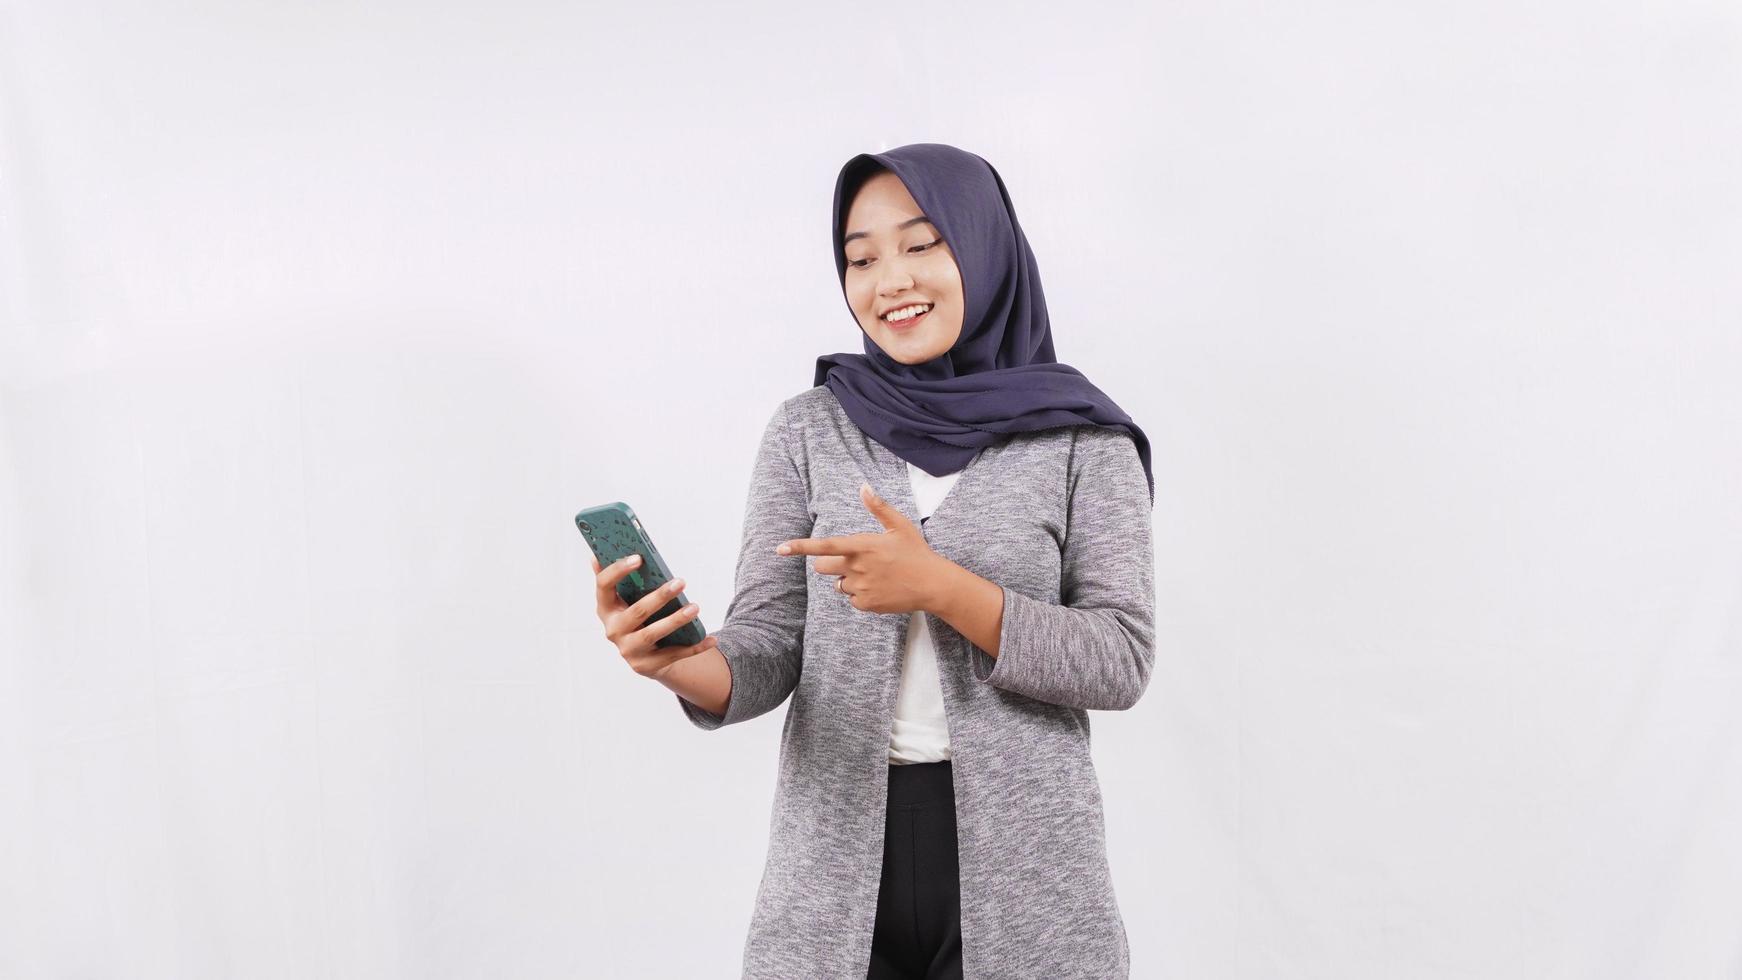 jonge aziatische vrouw die smartphone speelt die gelukkig op witte achtergrond wordt geïsoleerd foto